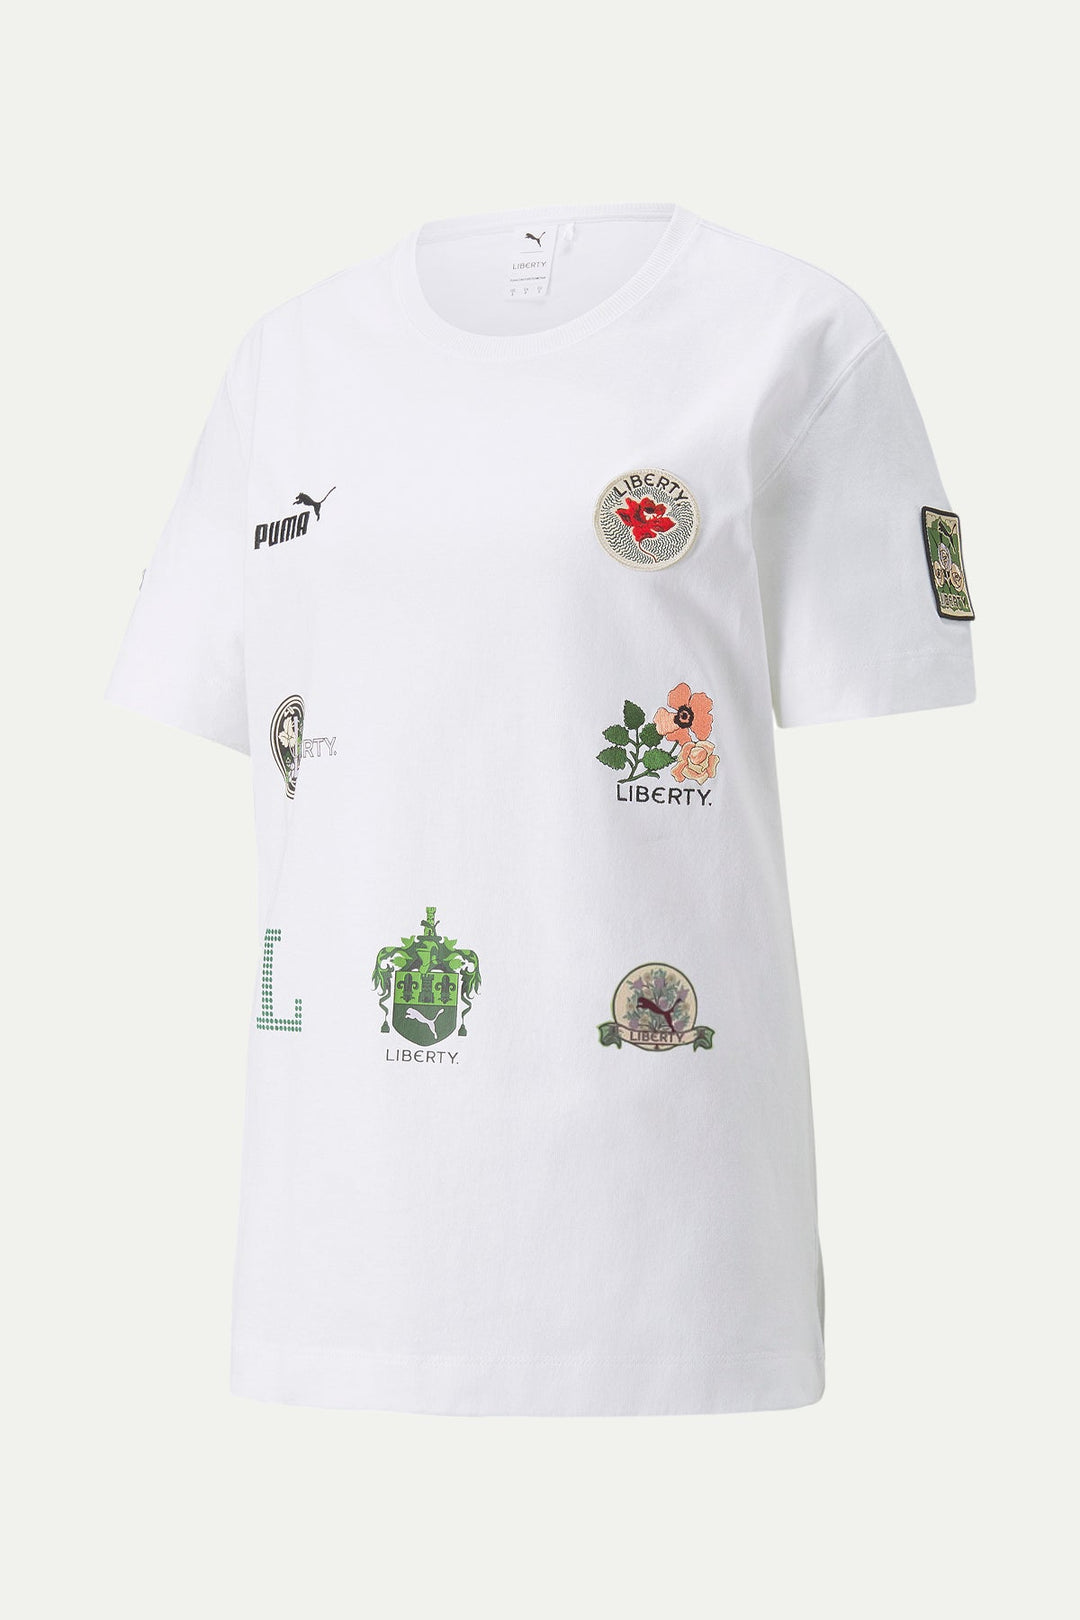 חולצת פומה x ליברטי לבנה עם פאצ׳ים - Puma